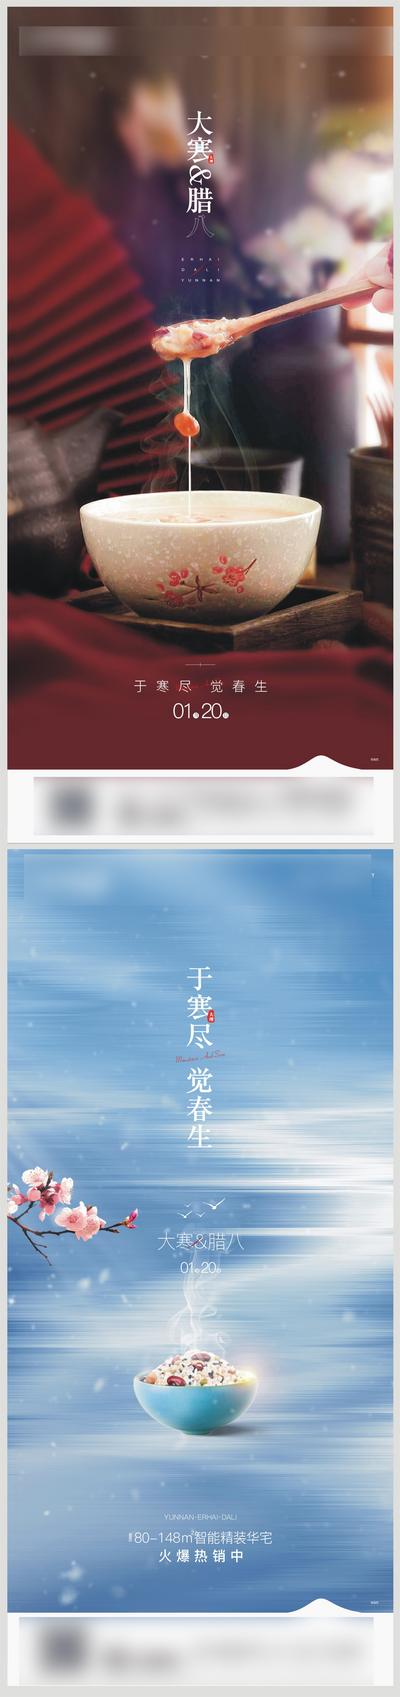 南门网 海报 中国传统节日 房地产 腊八节 大寒 腊八粥 腊梅 雪花